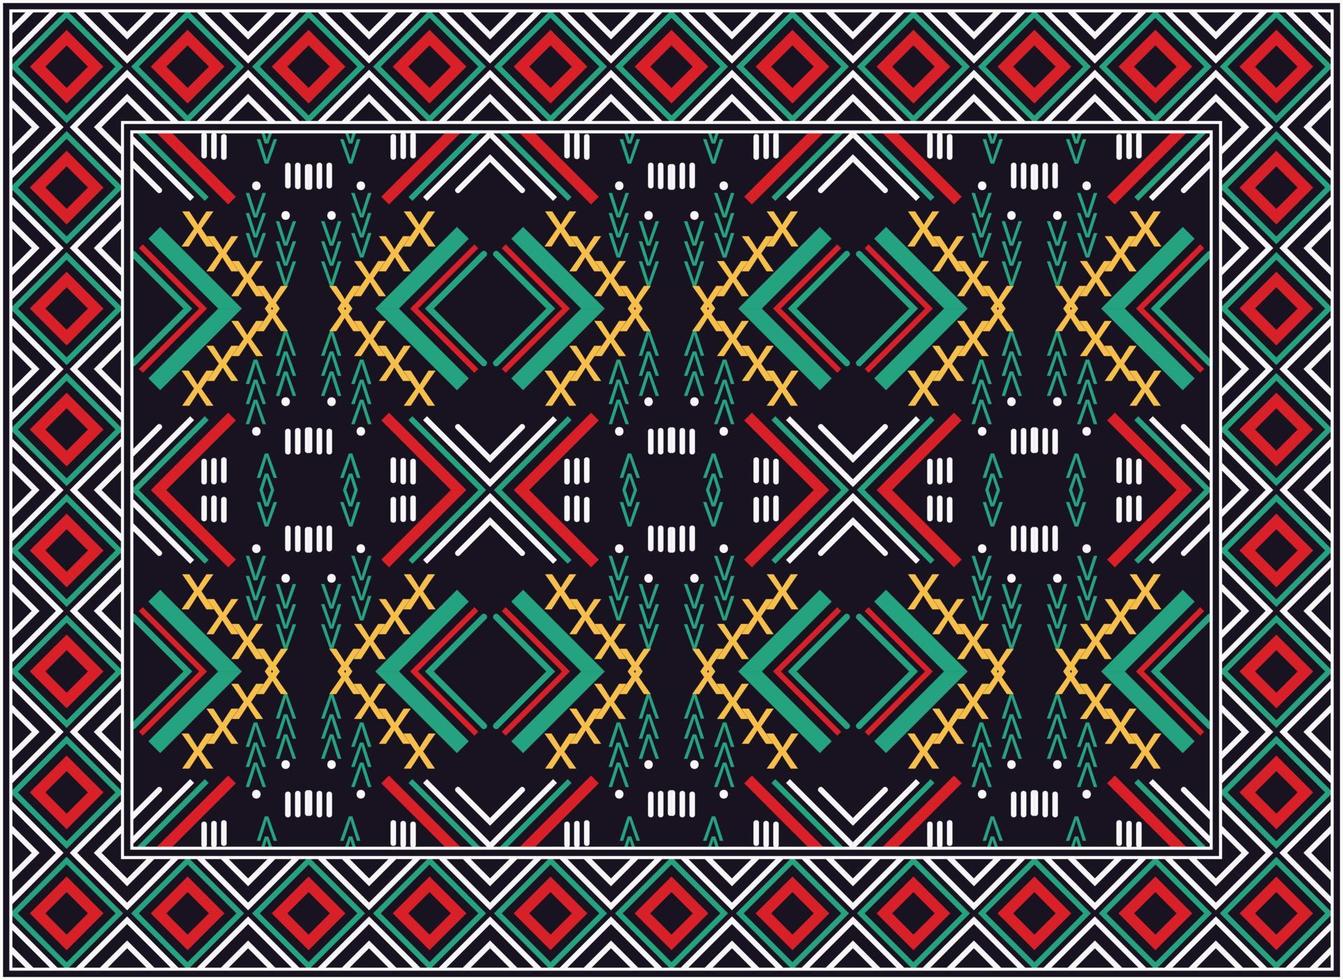 antiguo persa alfombra, africano motivo moderno persa alfombra, africano étnico azteca estilo diseño para impresión tela alfombras, toallas, pañuelos, bufandas alfombra, vector